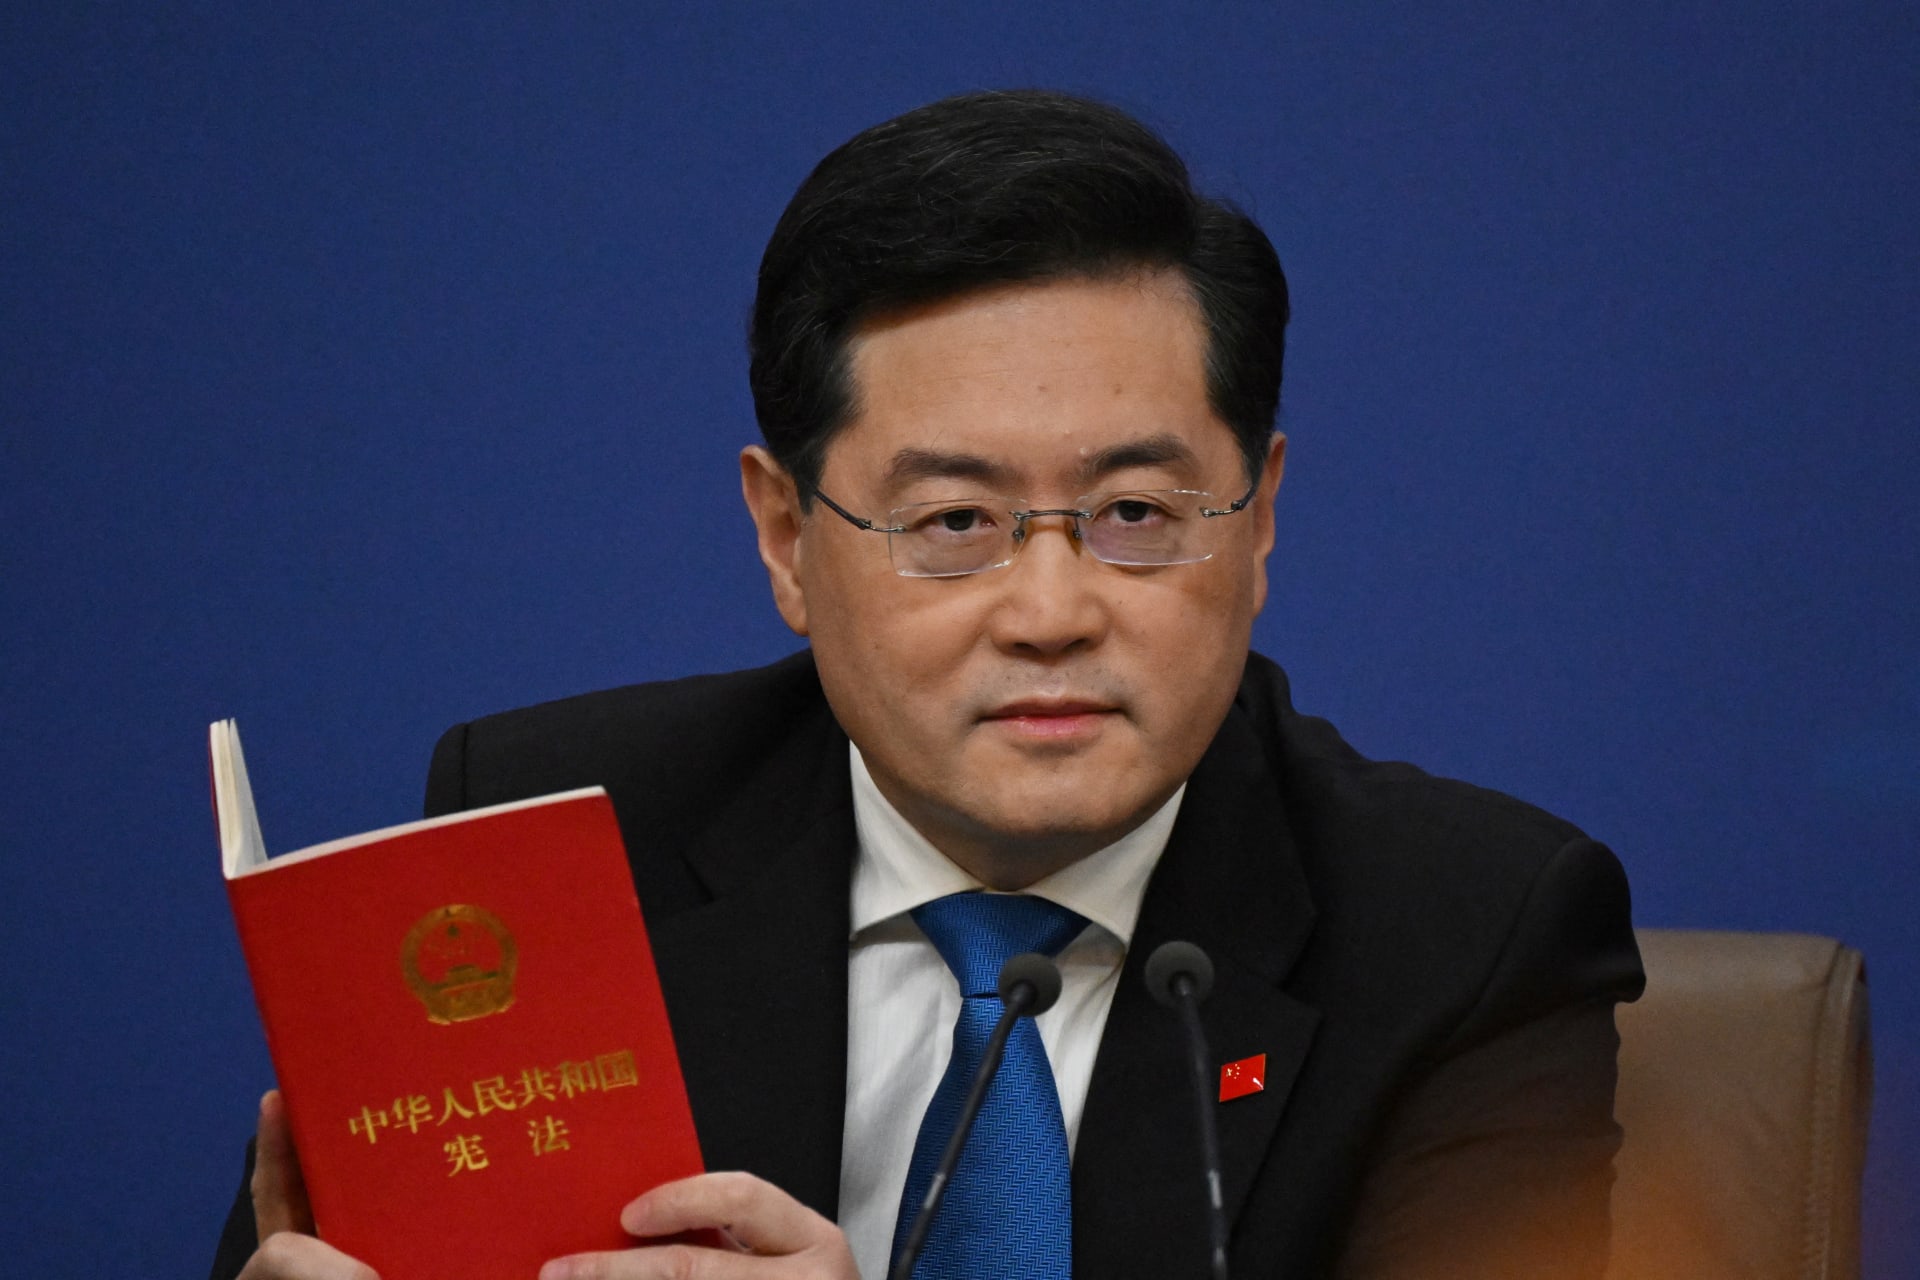 وزير خارجية الصين يوجه تحذيرا حول إنشاء "ناتو" في آسيا وينفي تقديم أسلحة لروسيا